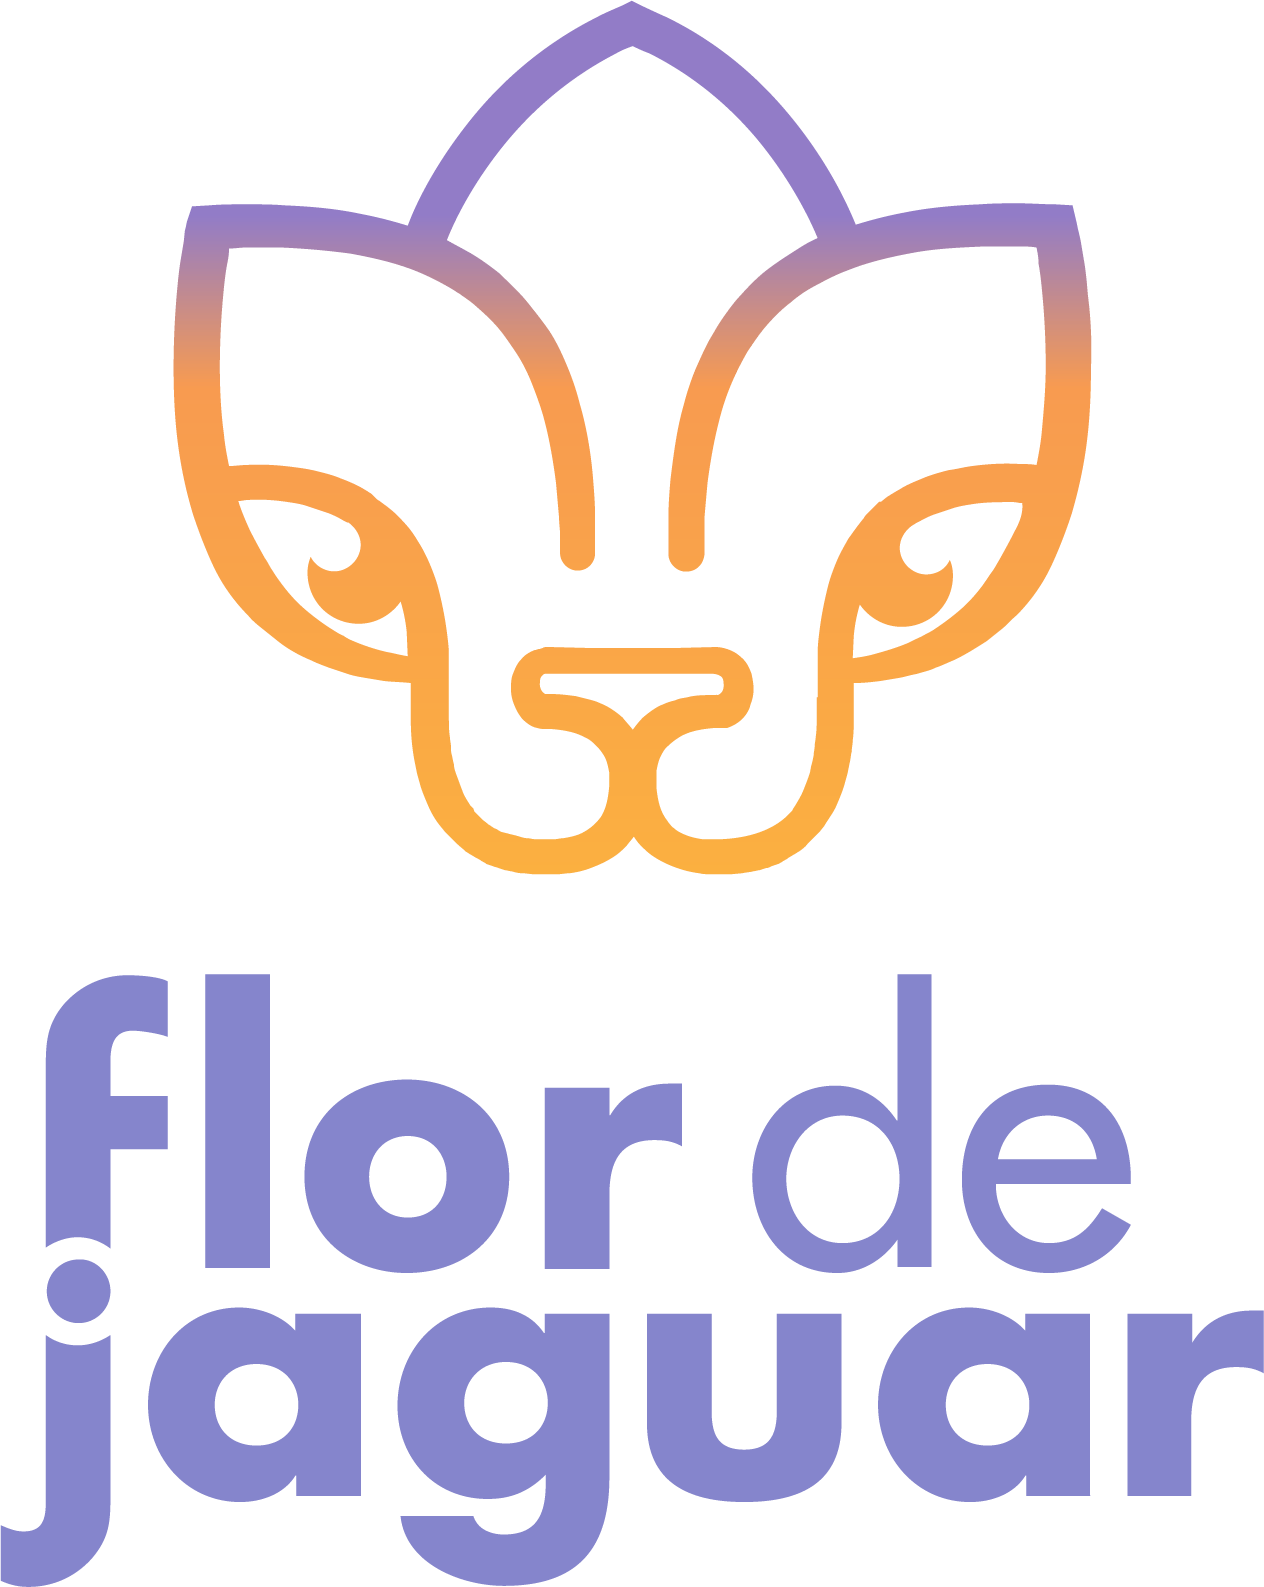 Flor de Jaguar